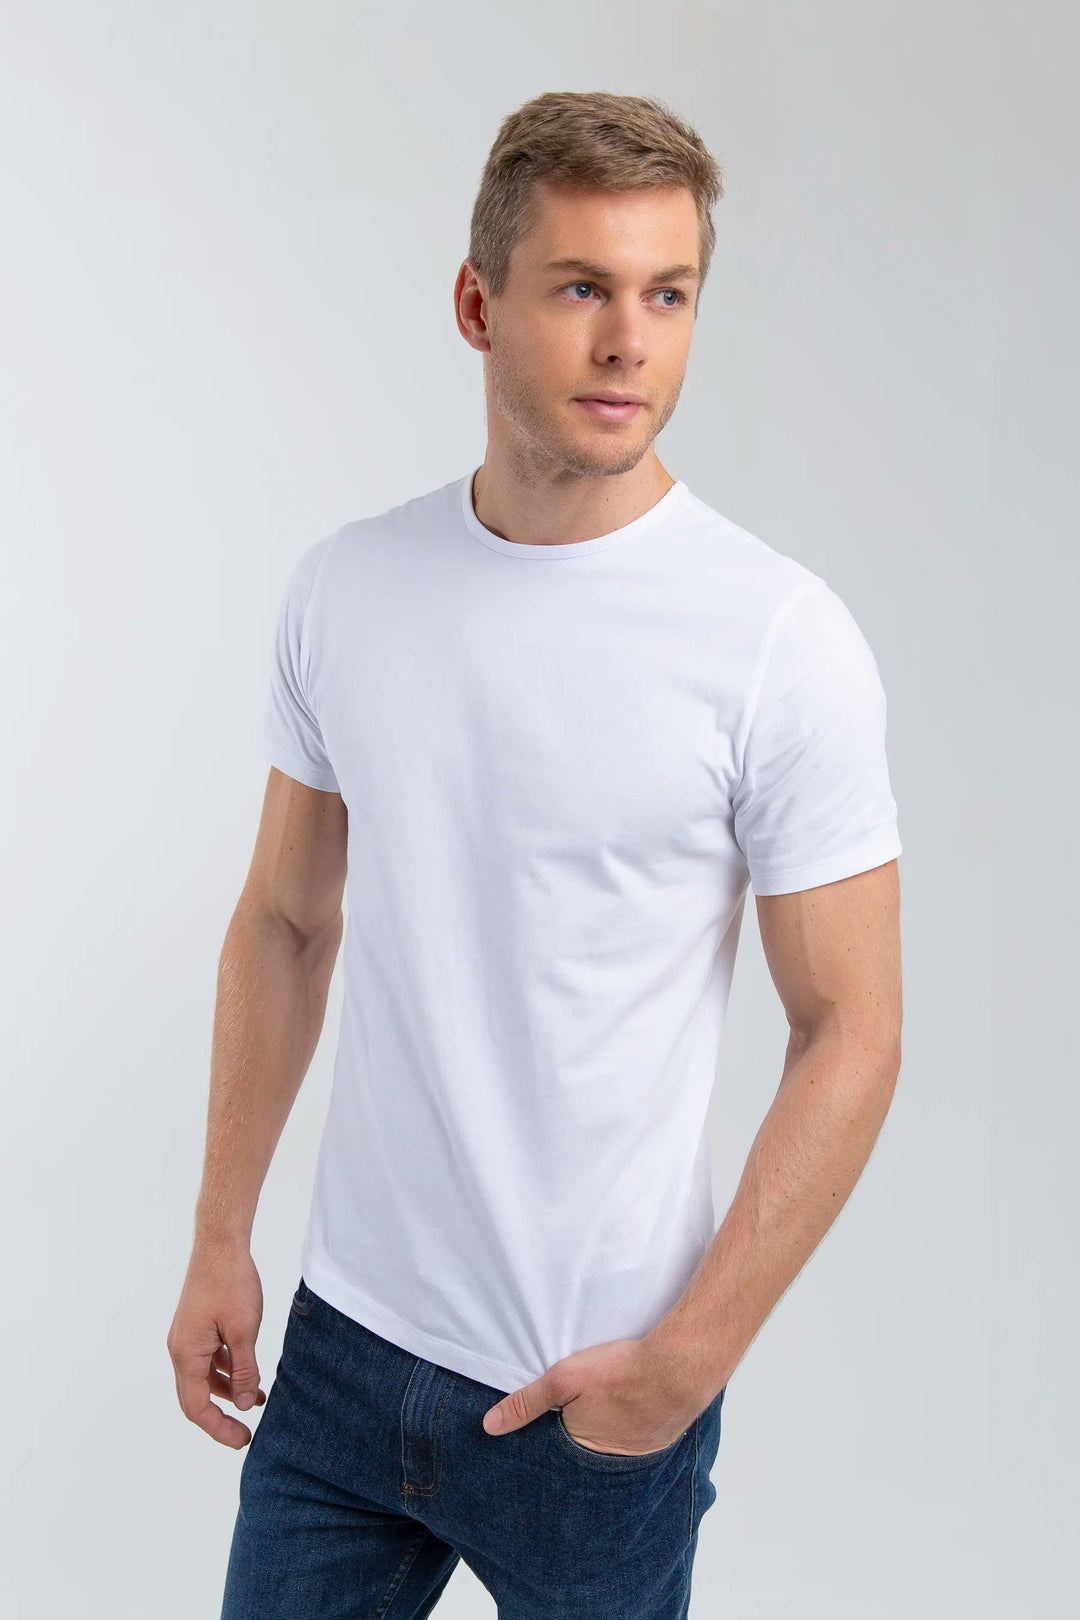 Camiseta blanca para hombre, cuello redondo. Una camiseta minimalista, básica para cualquier ocasión.